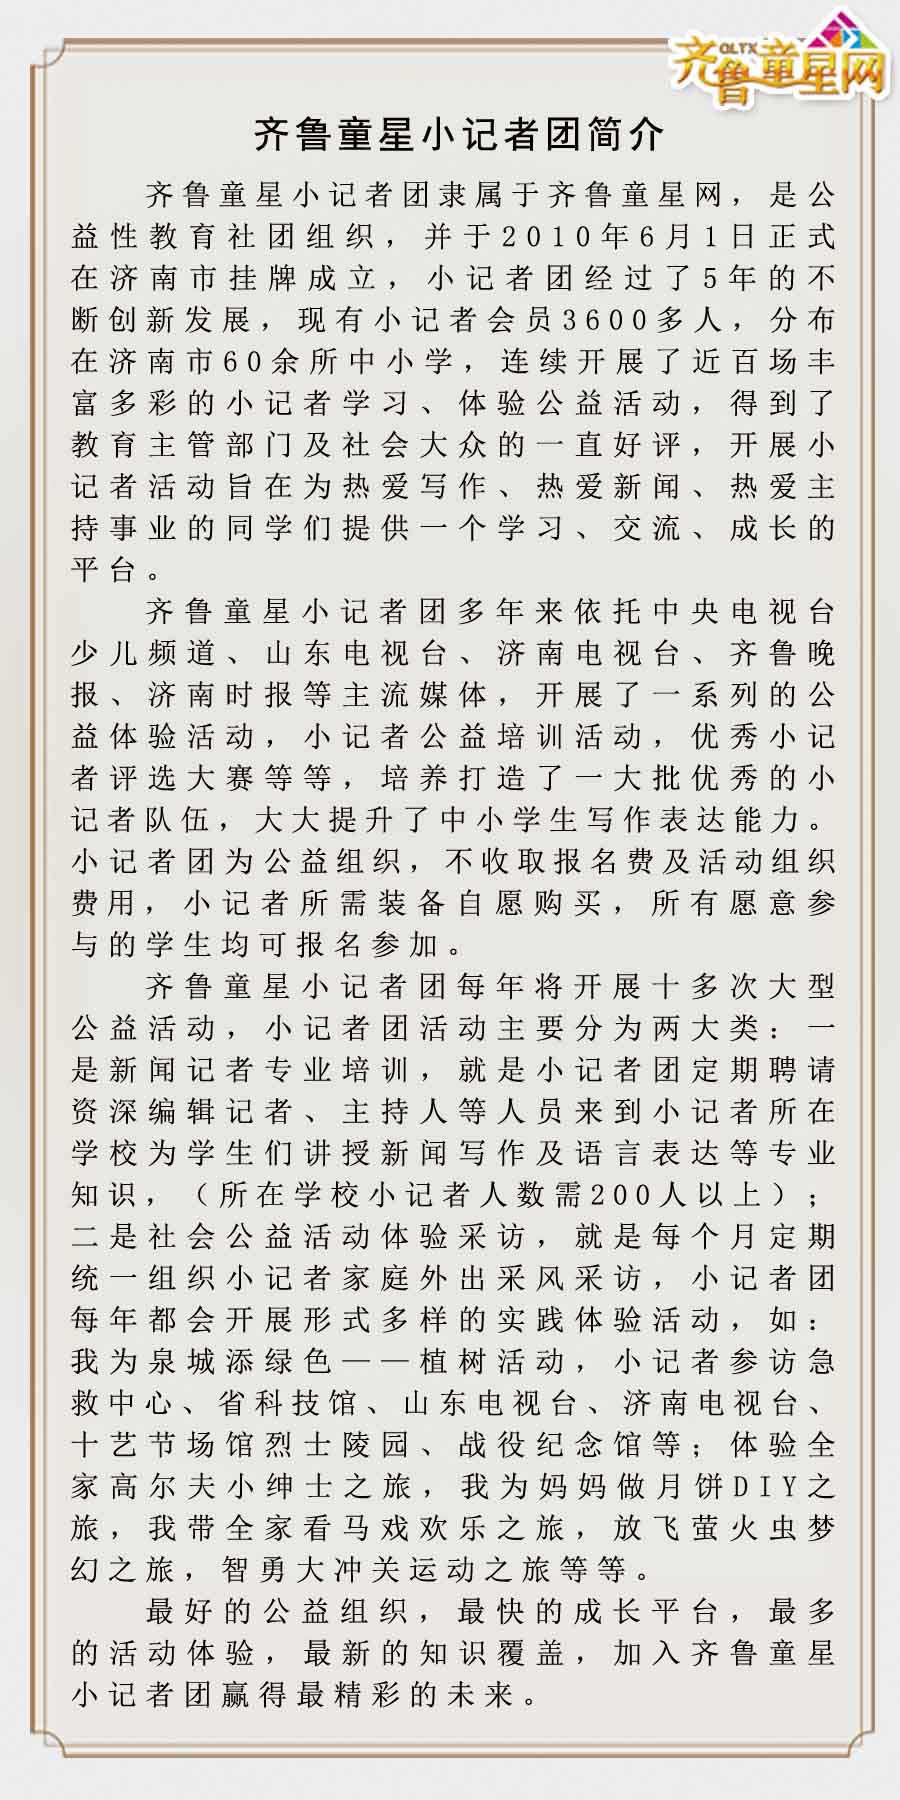 齐鲁童星小记者团精彩活动集锦(图1)